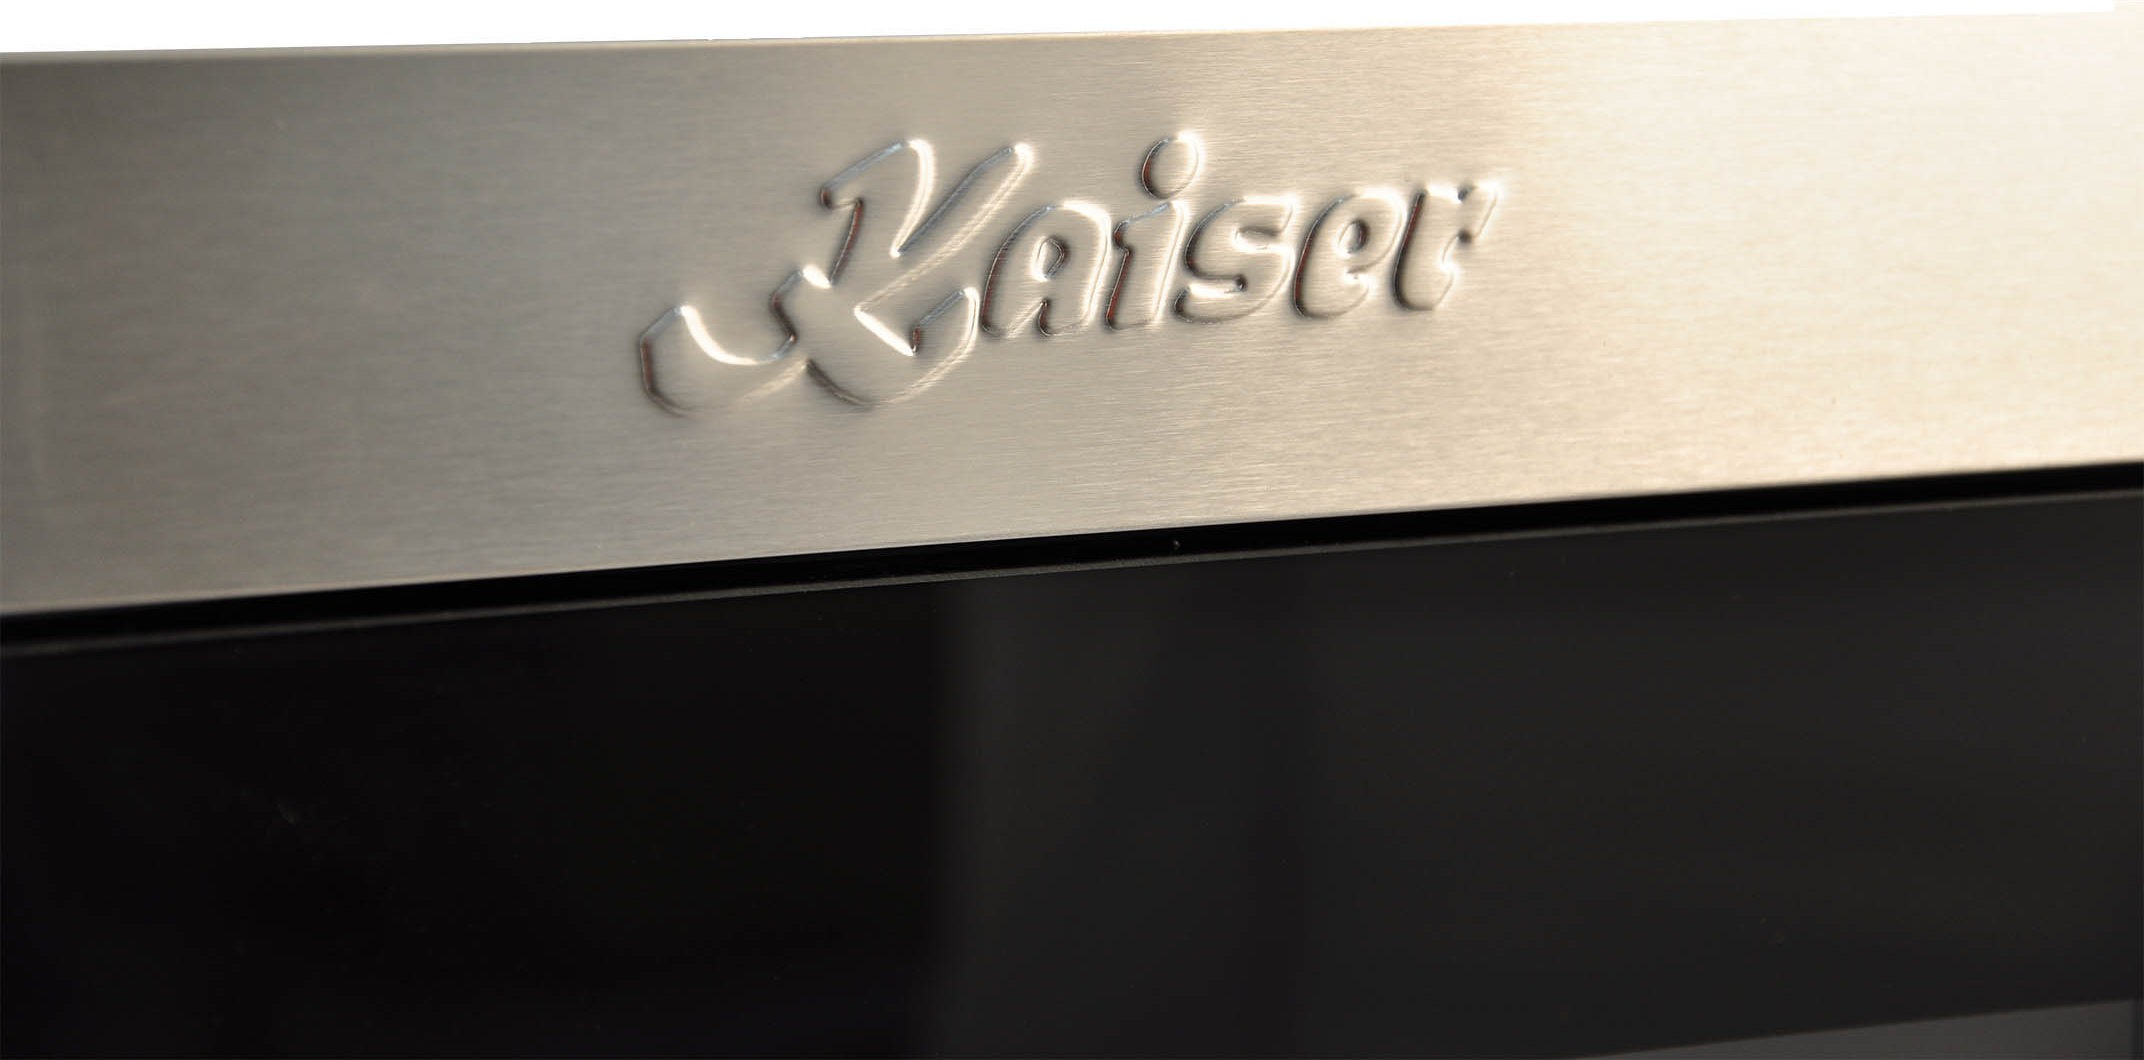 Микроволновая печь Kaiser EM 2520 цена 20099.00 грн - фотография 2